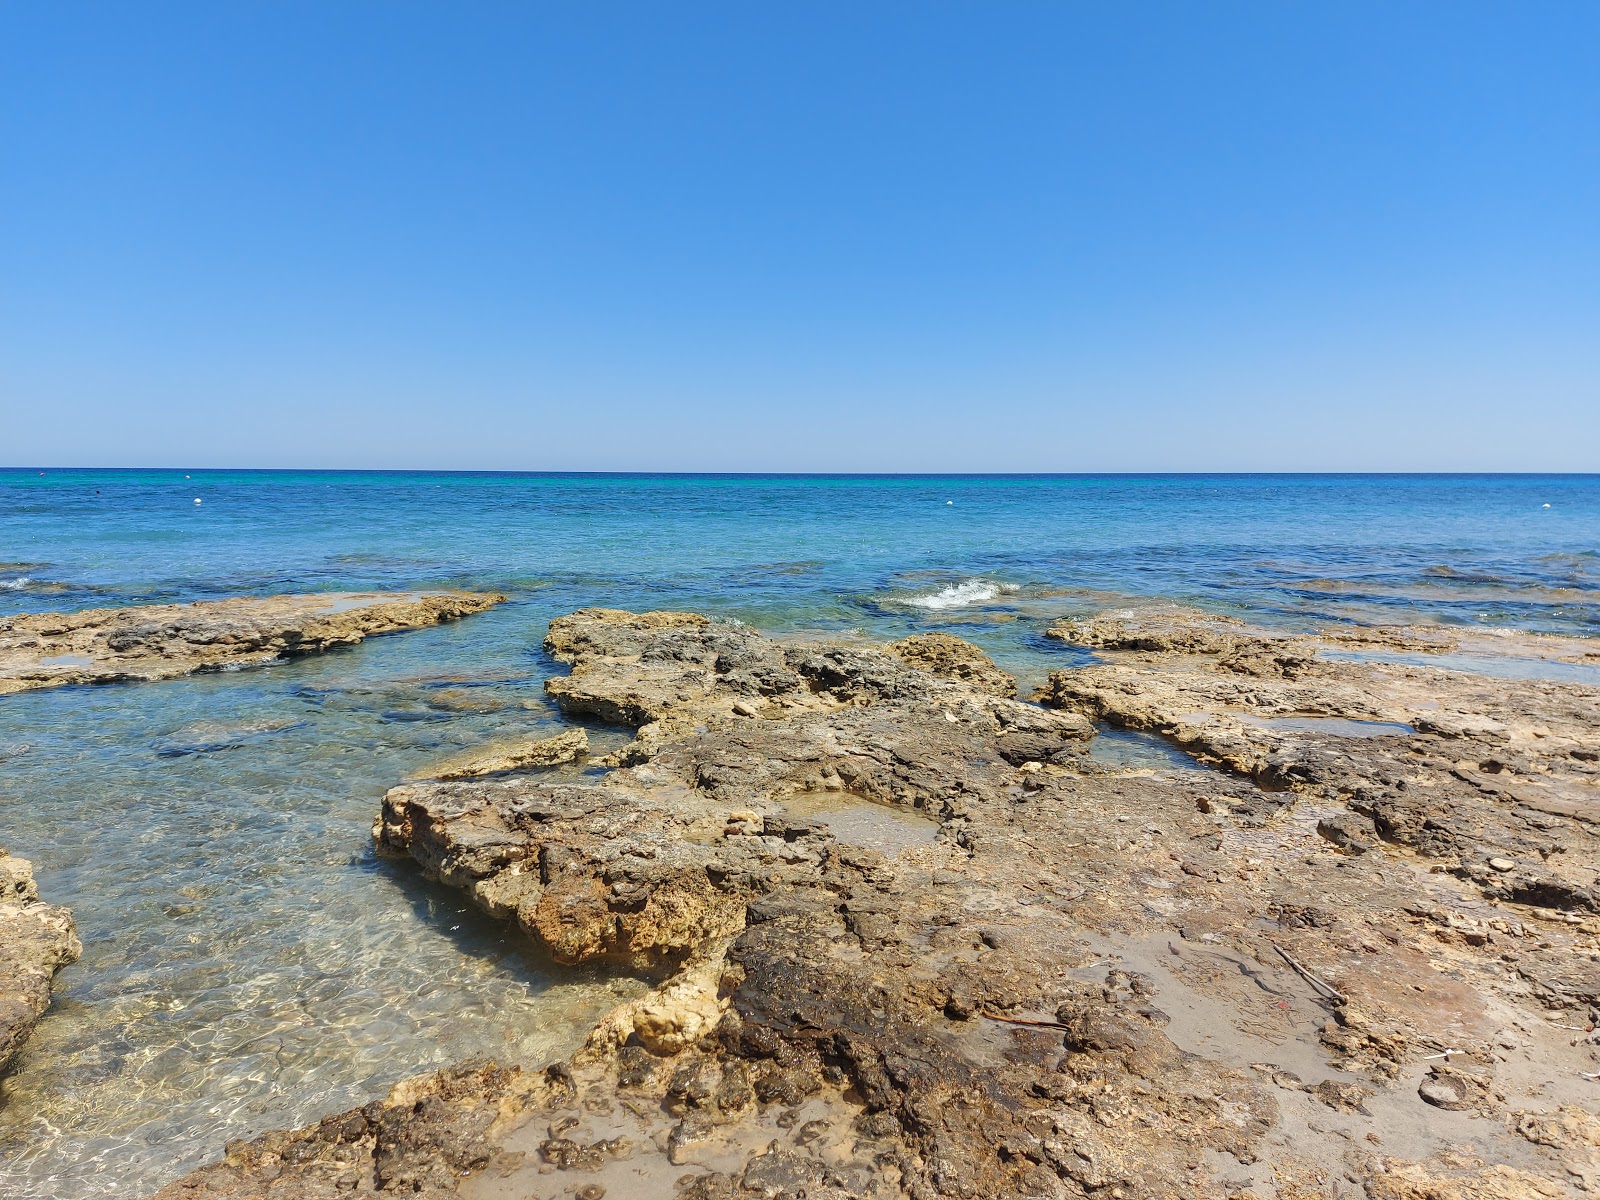 Fotografija Frassanito beach nahaja se v naravnem okolju